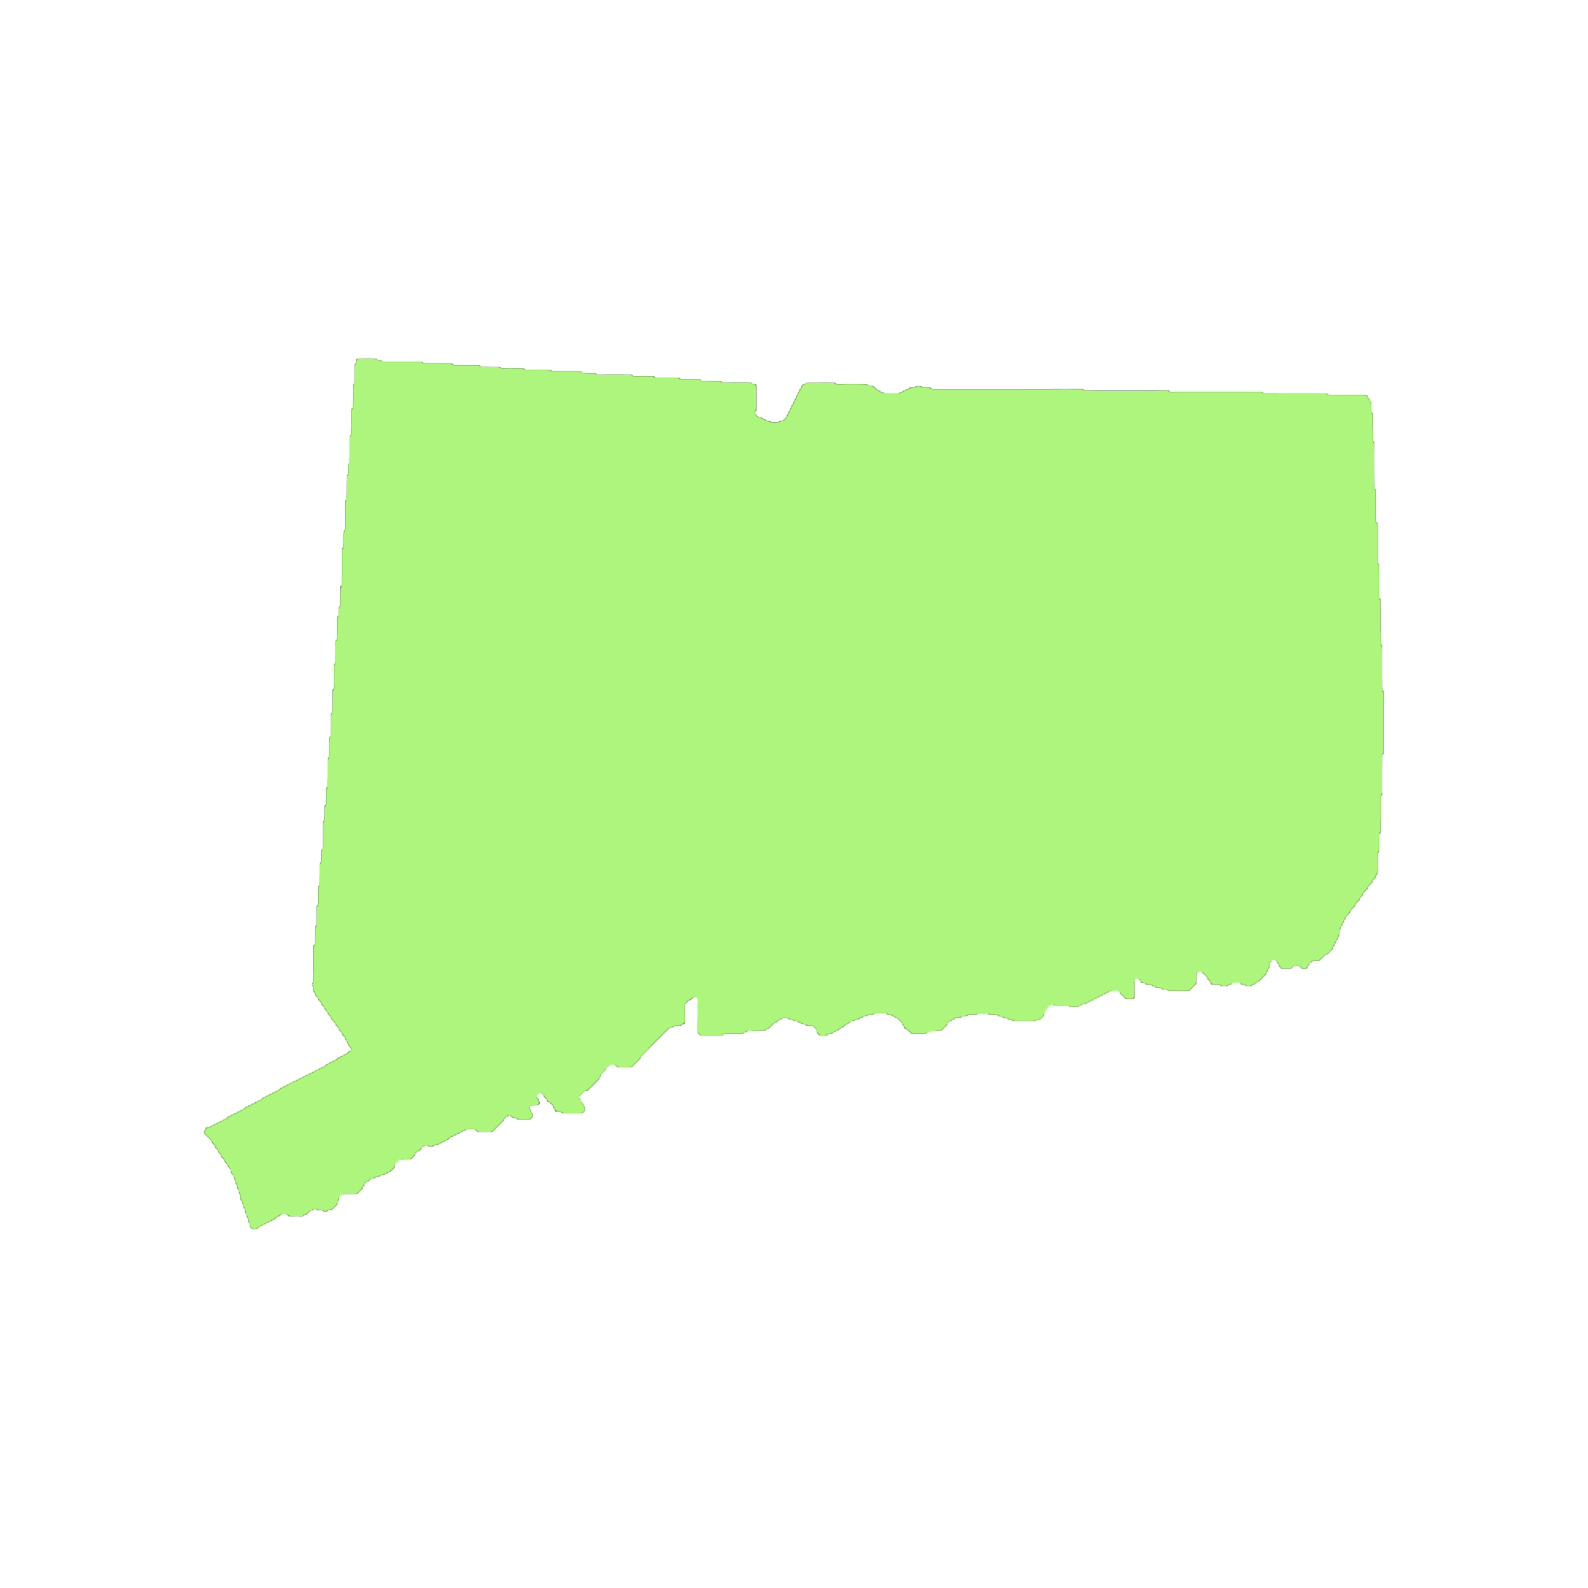 Connecticut